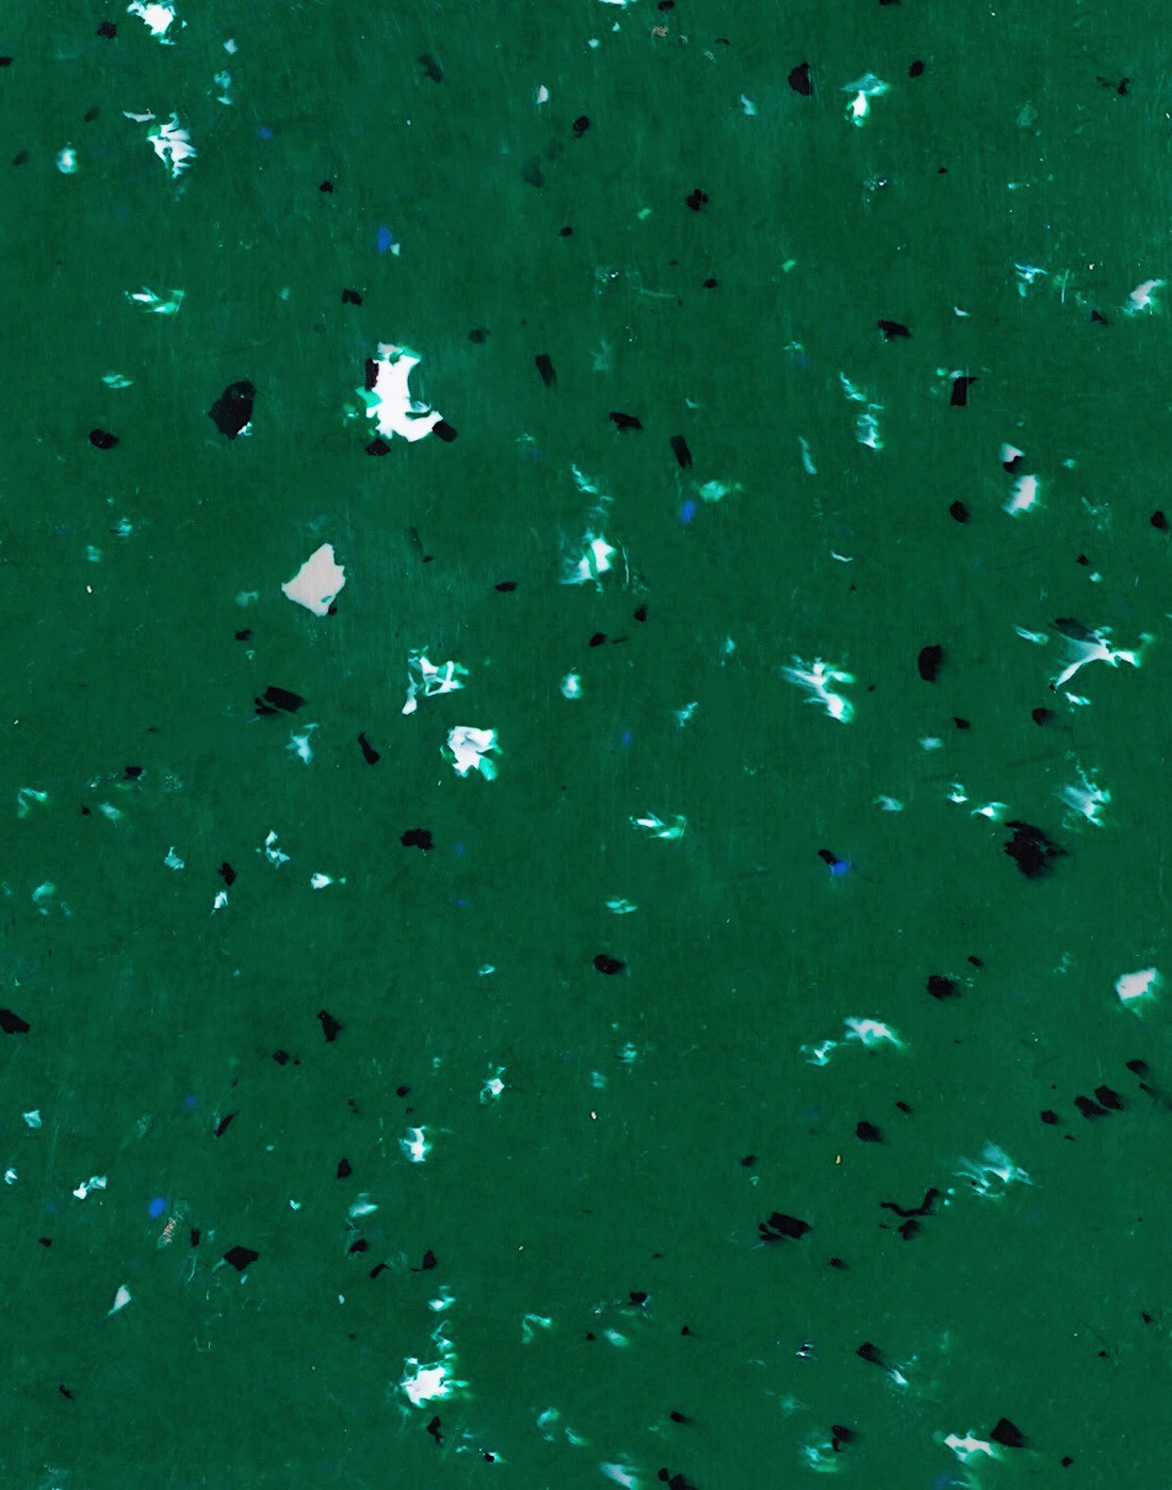 granité vert avec morceaux noirs en moyenne quantité, quelques blancs et petits morceaux bleus